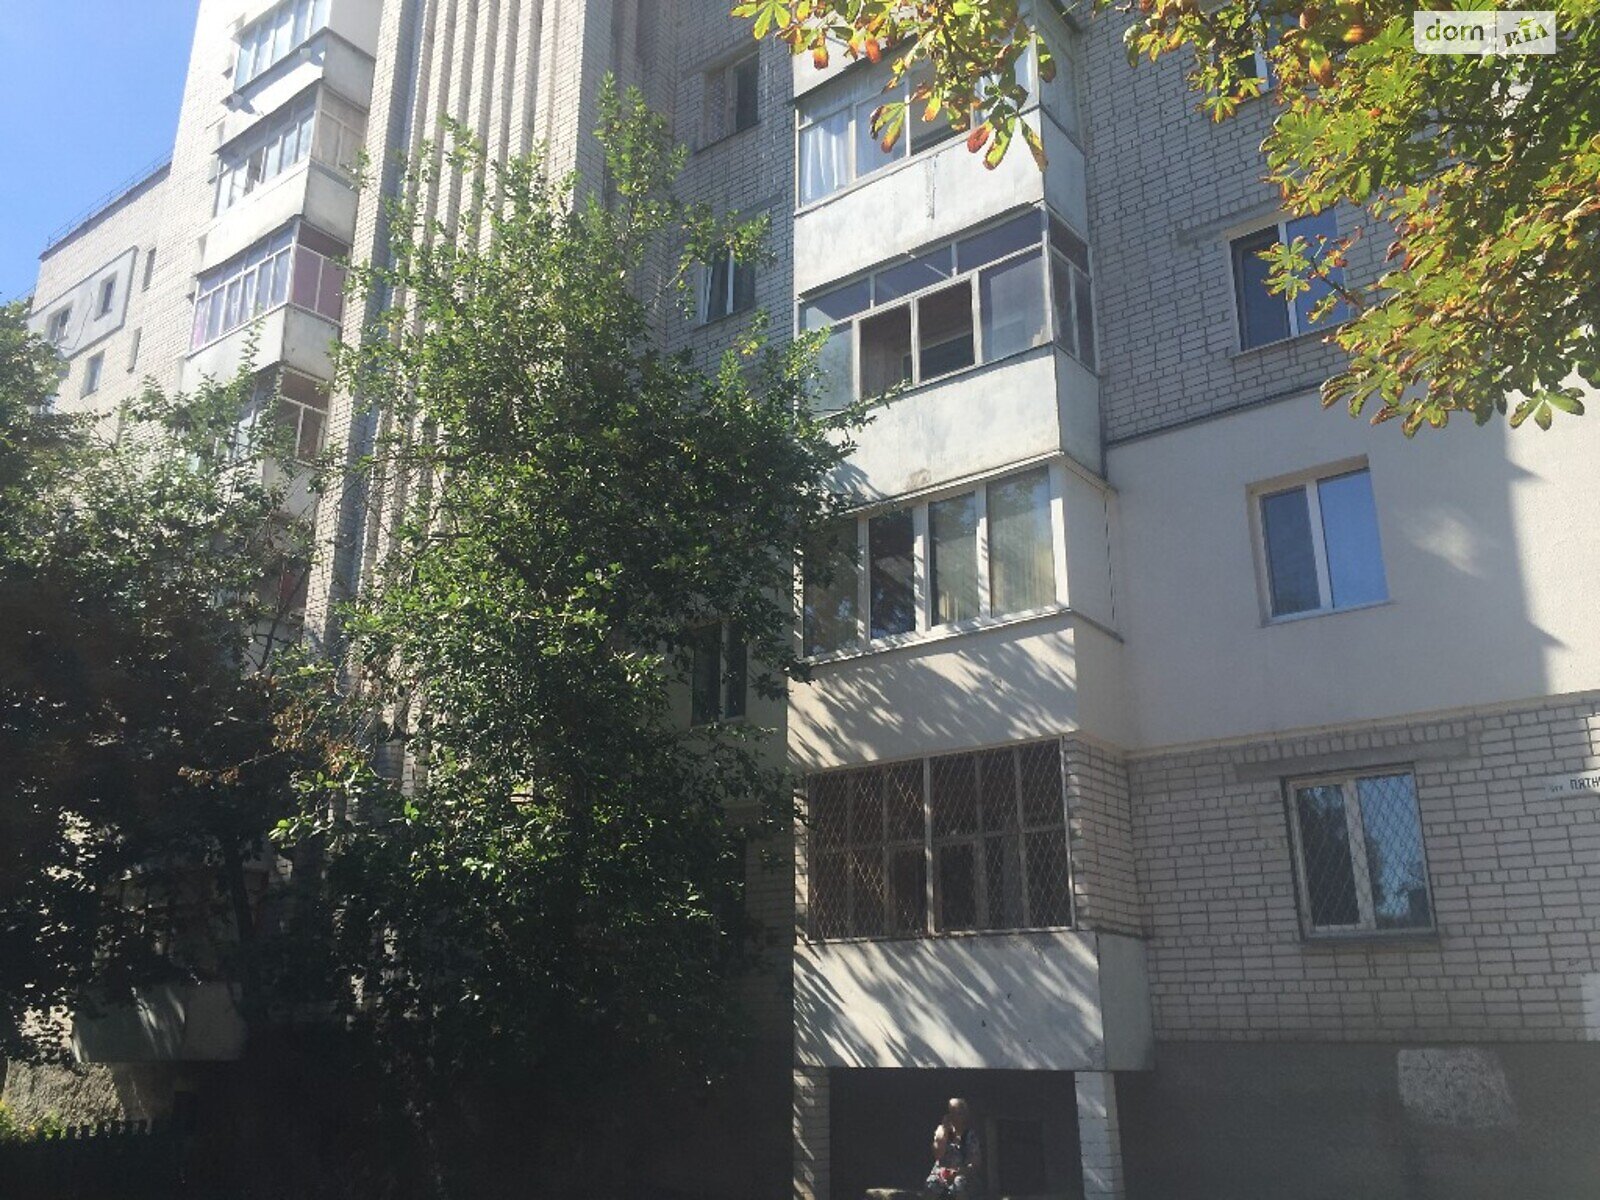 Аренда офисного помещения в Чернигове, Пятницкая улица 74, помещений - 1, этаж - 1 фото 1